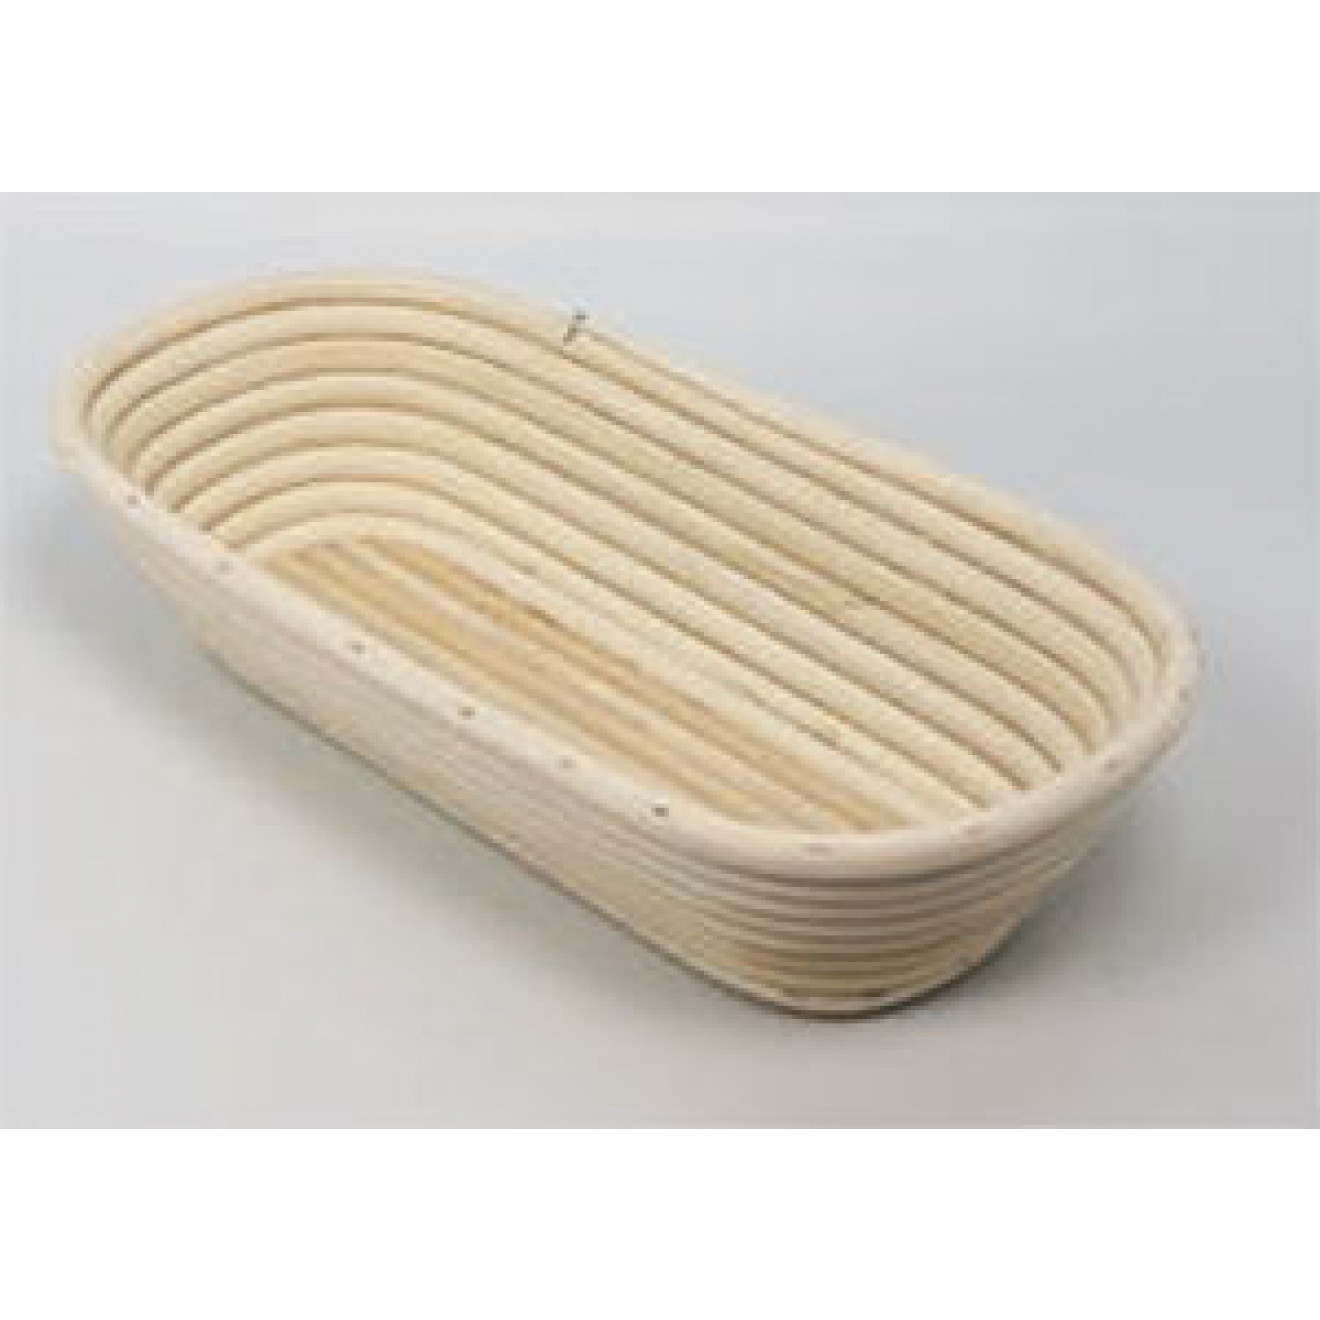 Banneton Bread Dough Proofing Basket, Oval for 2.2lb (1kg) Dough